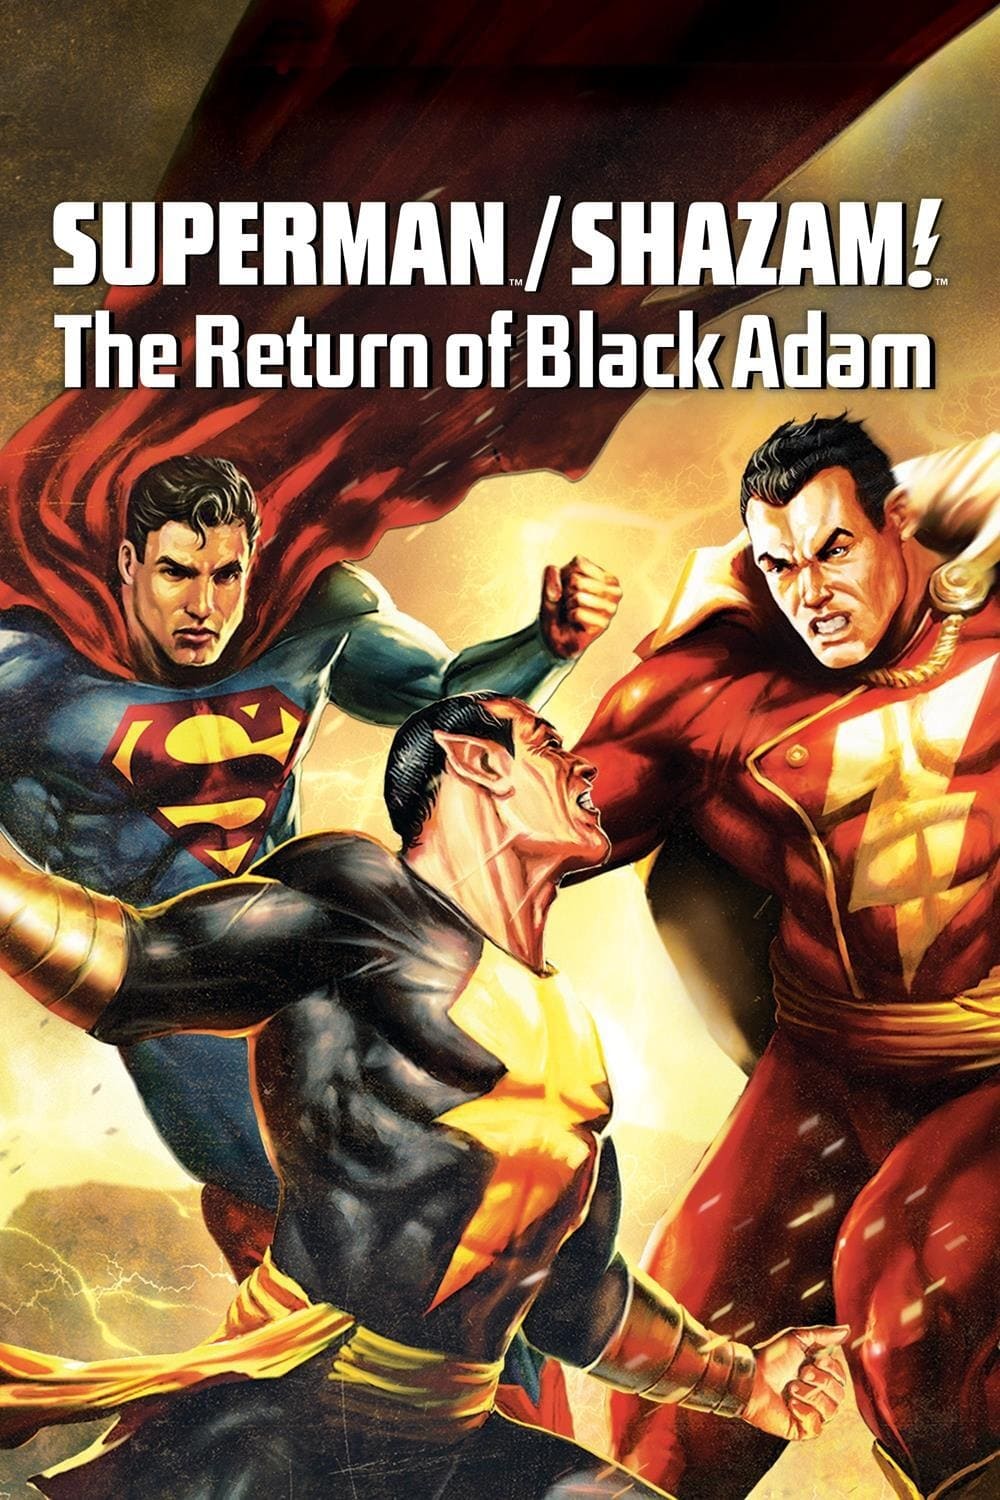 Superman/Shazam - Le retour de Black Adam